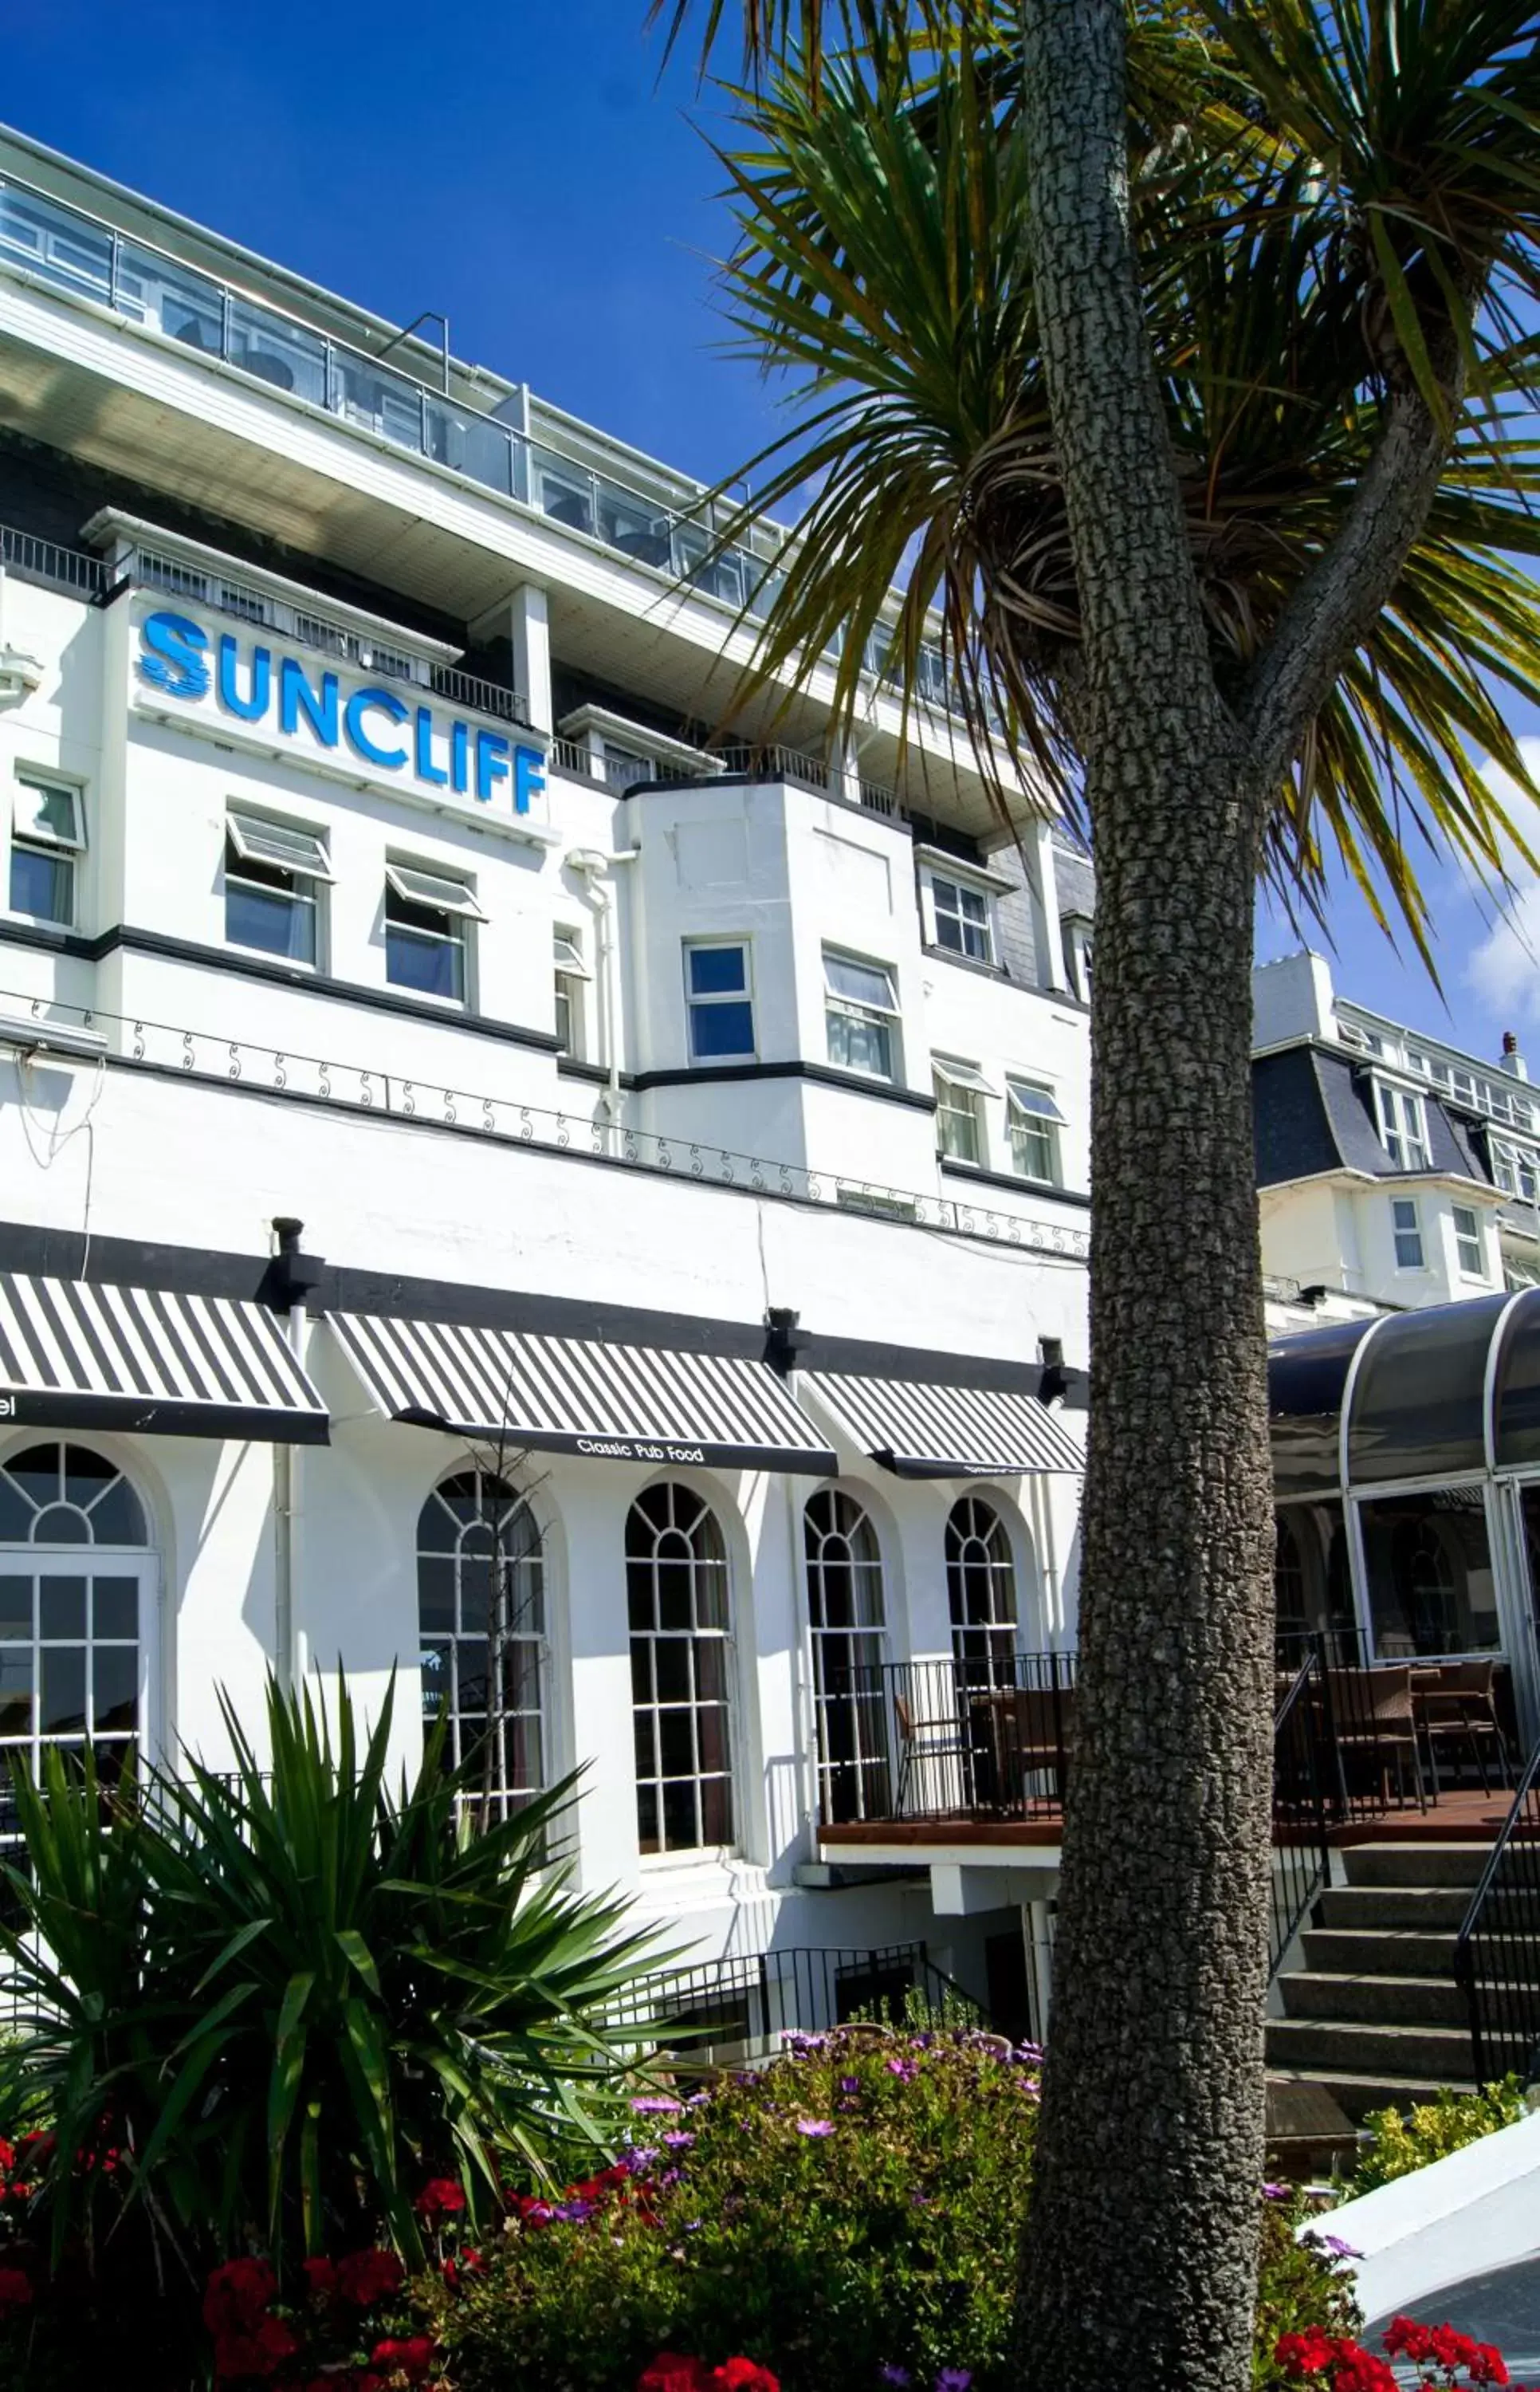 Facade/Entrance in Suncliff Hotel - OCEANA COLLECTION